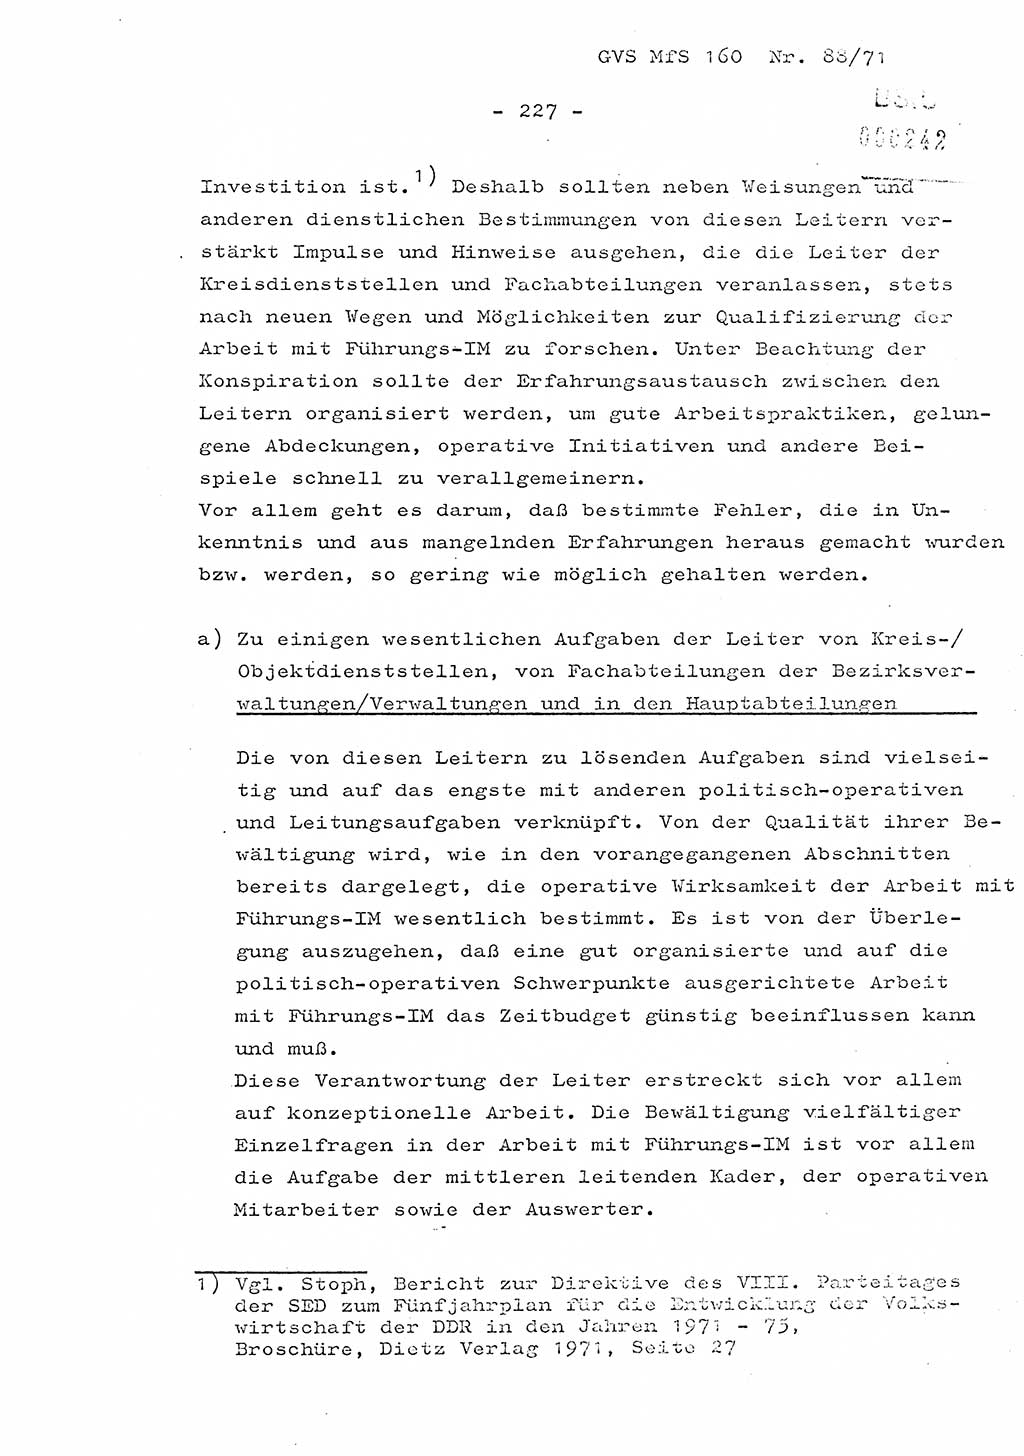 Dissertation Oberstleutnant Josef Schwarz (BV Schwerin), Major Fritz Amm (JHS), Hauptmann Peter Gräßler (JHS), Ministerium für Staatssicherheit (MfS) [Deutsche Demokratische Republik (DDR)], Juristische Hochschule (JHS), Geheime Verschlußsache (GVS) 160-88/71, Potsdam 1972, Seite 227 (Diss. MfS DDR JHS GVS 160-88/71 1972, S. 227)